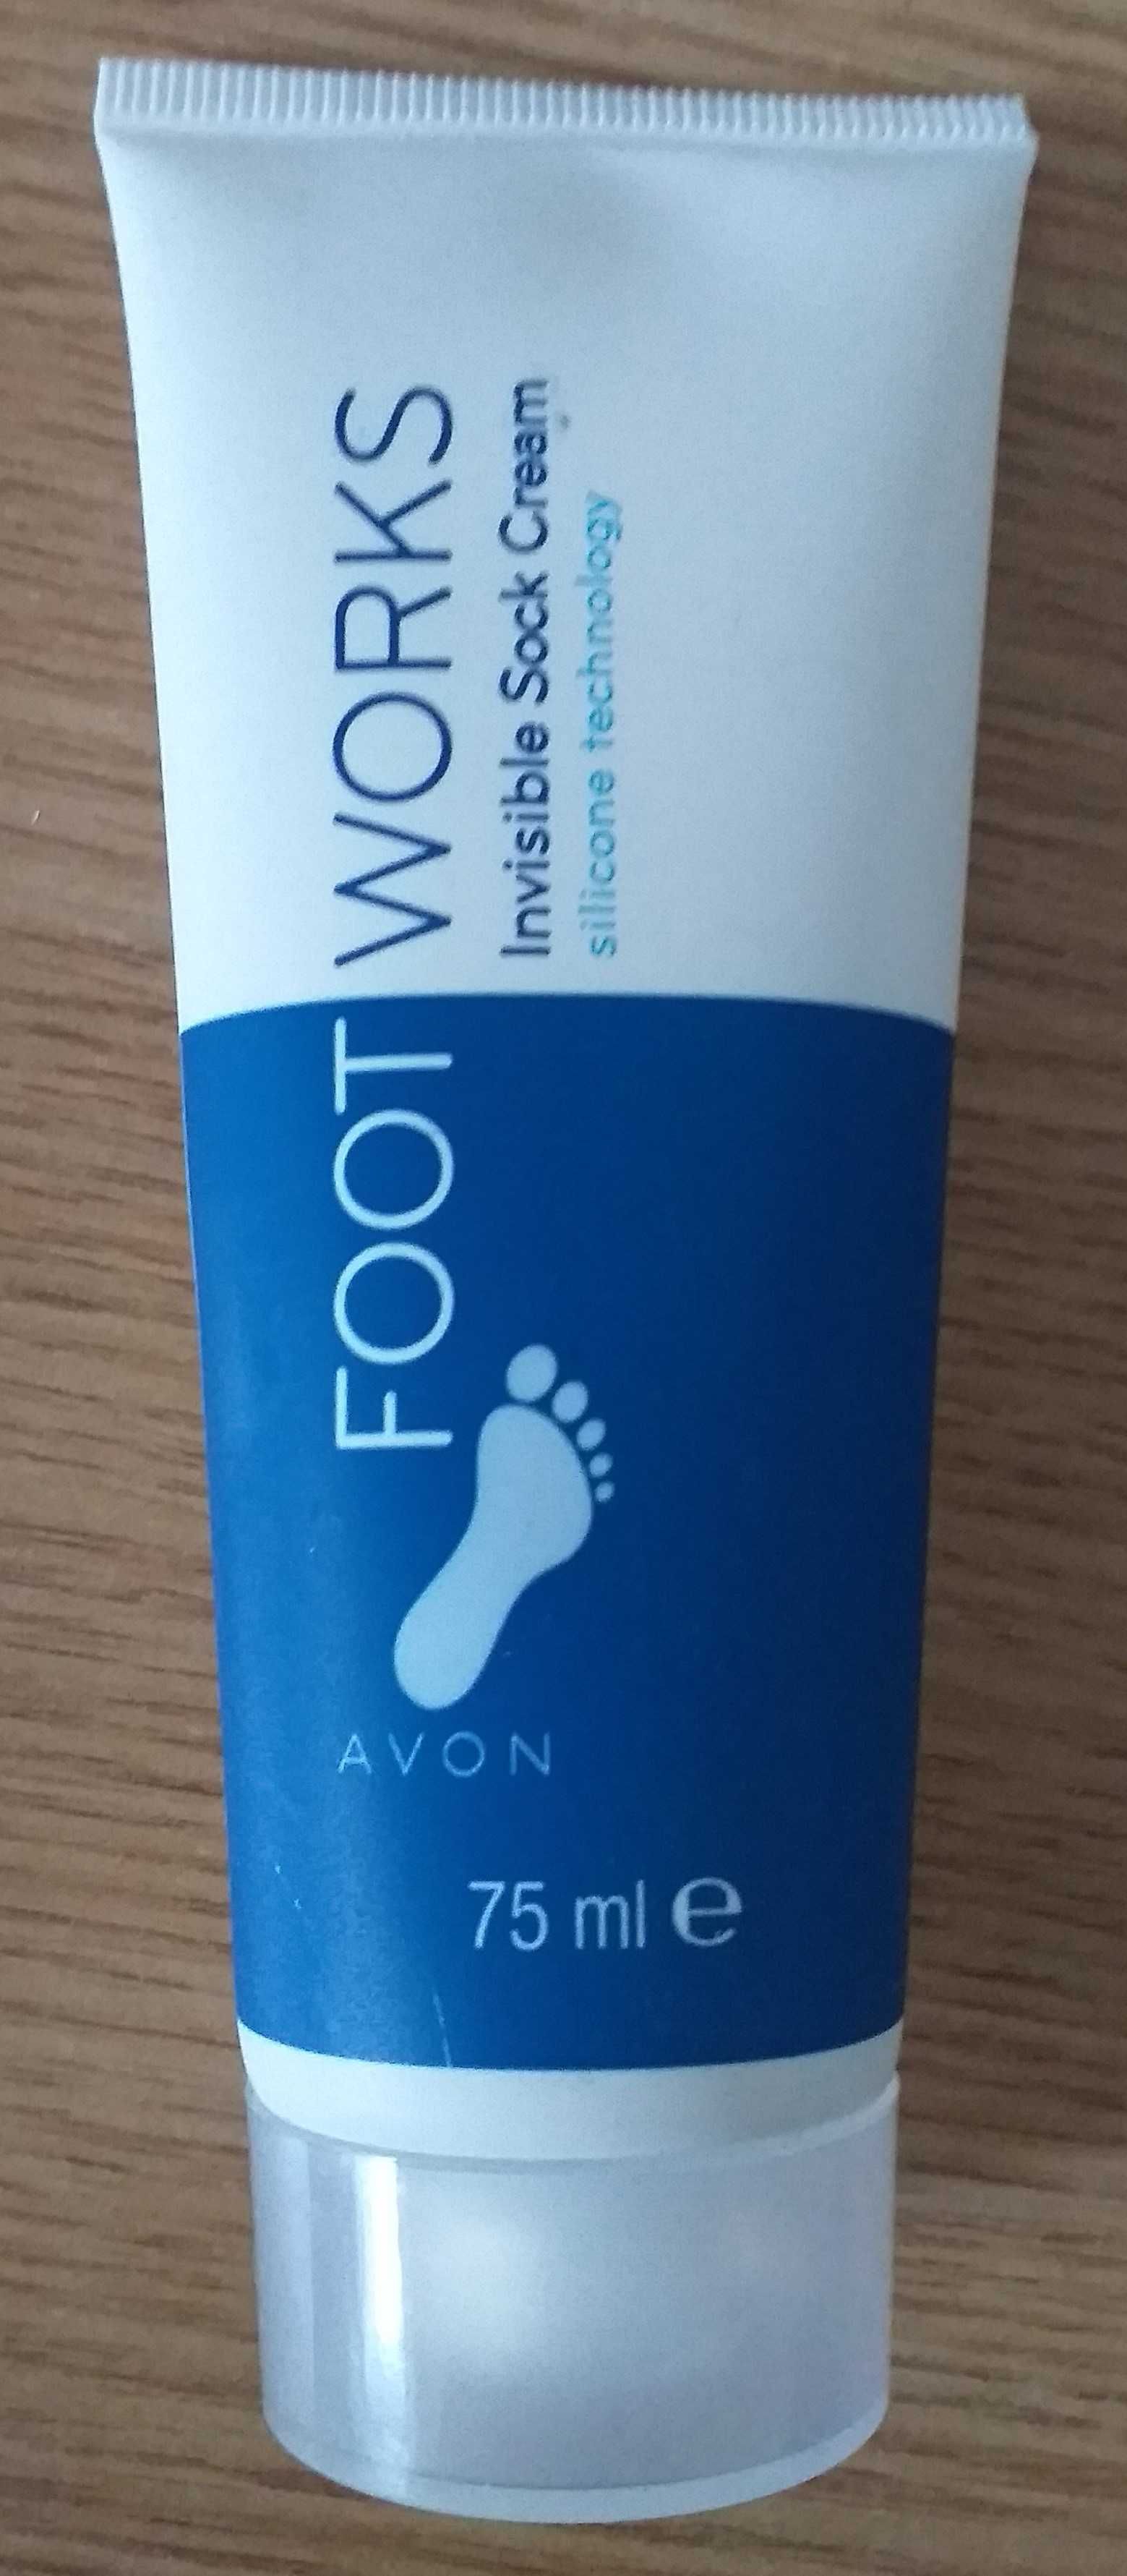 Avon - Nawilżający krem do stóp ze silikonem